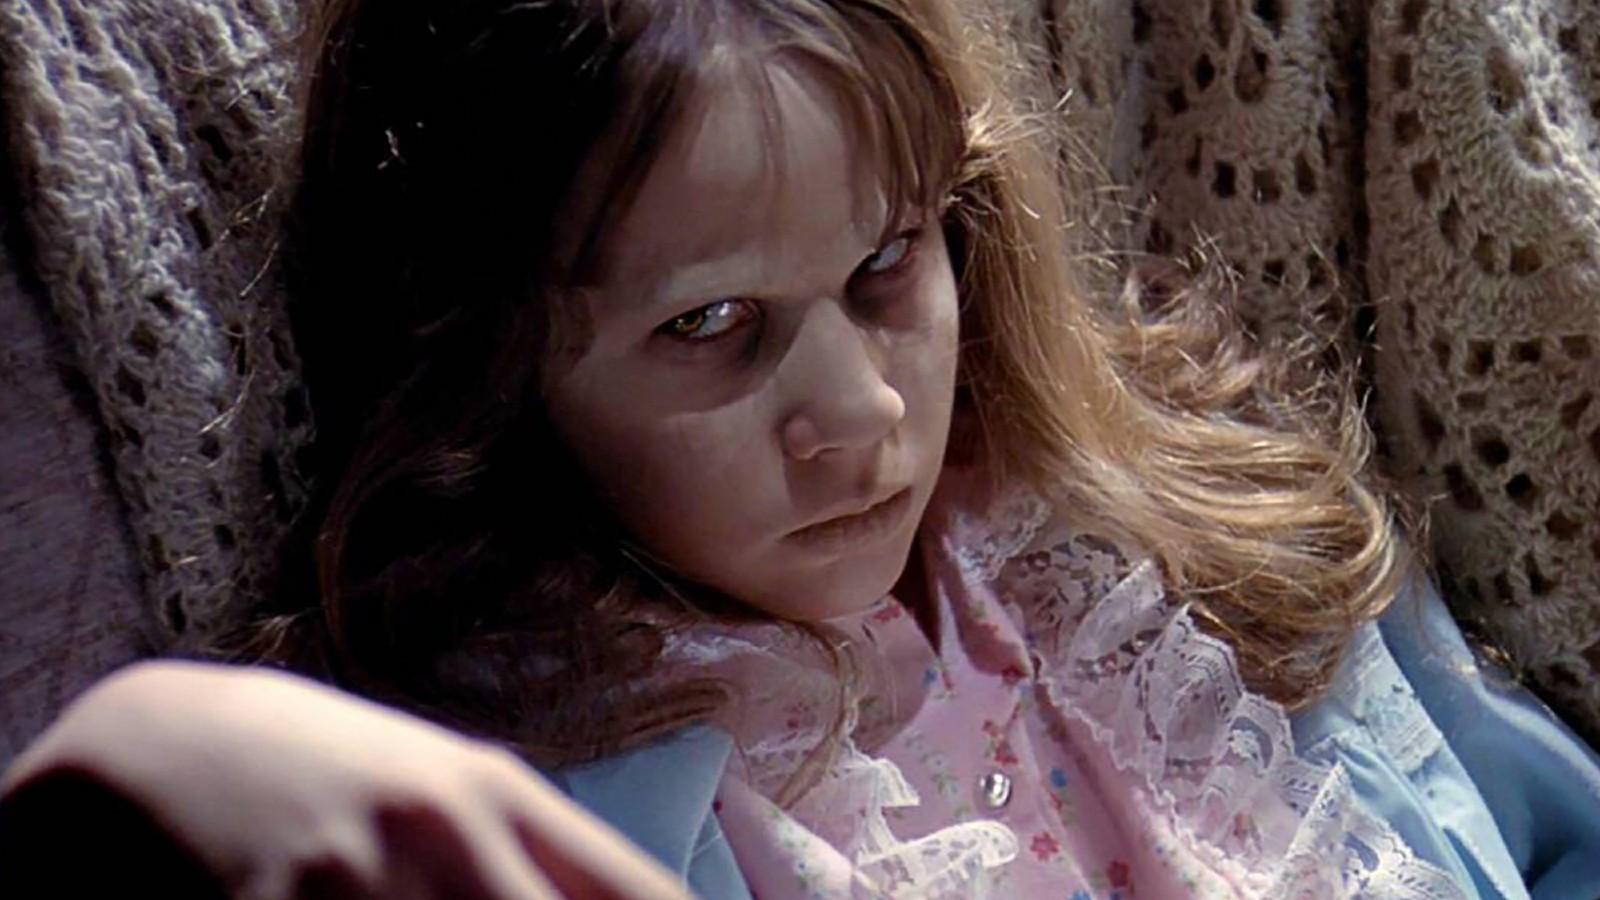 Little possessed girl in The Exorcist.